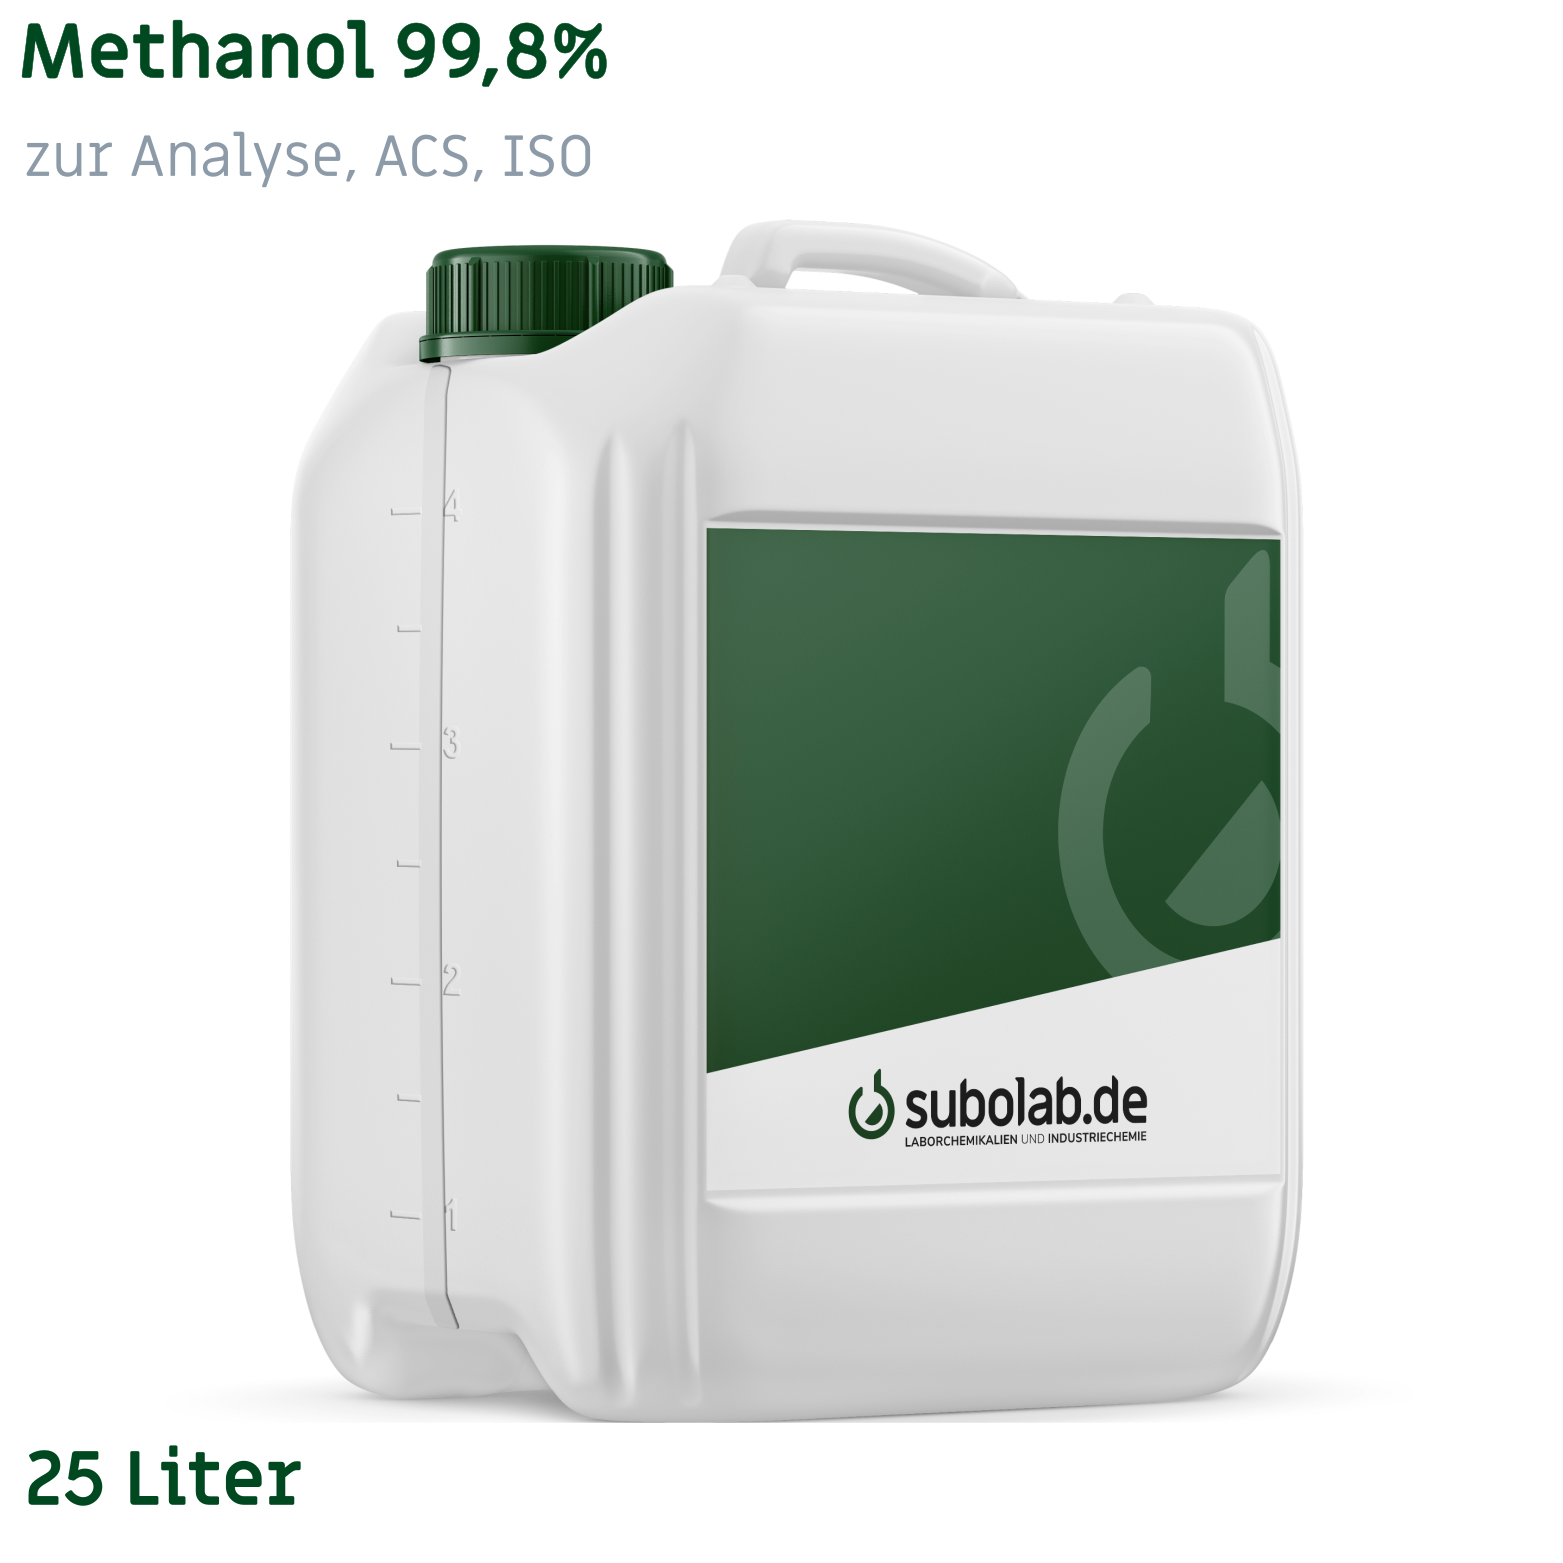 Bild von Methanol 99,8% zur Analyse, ACS, ISO (25 Liter)